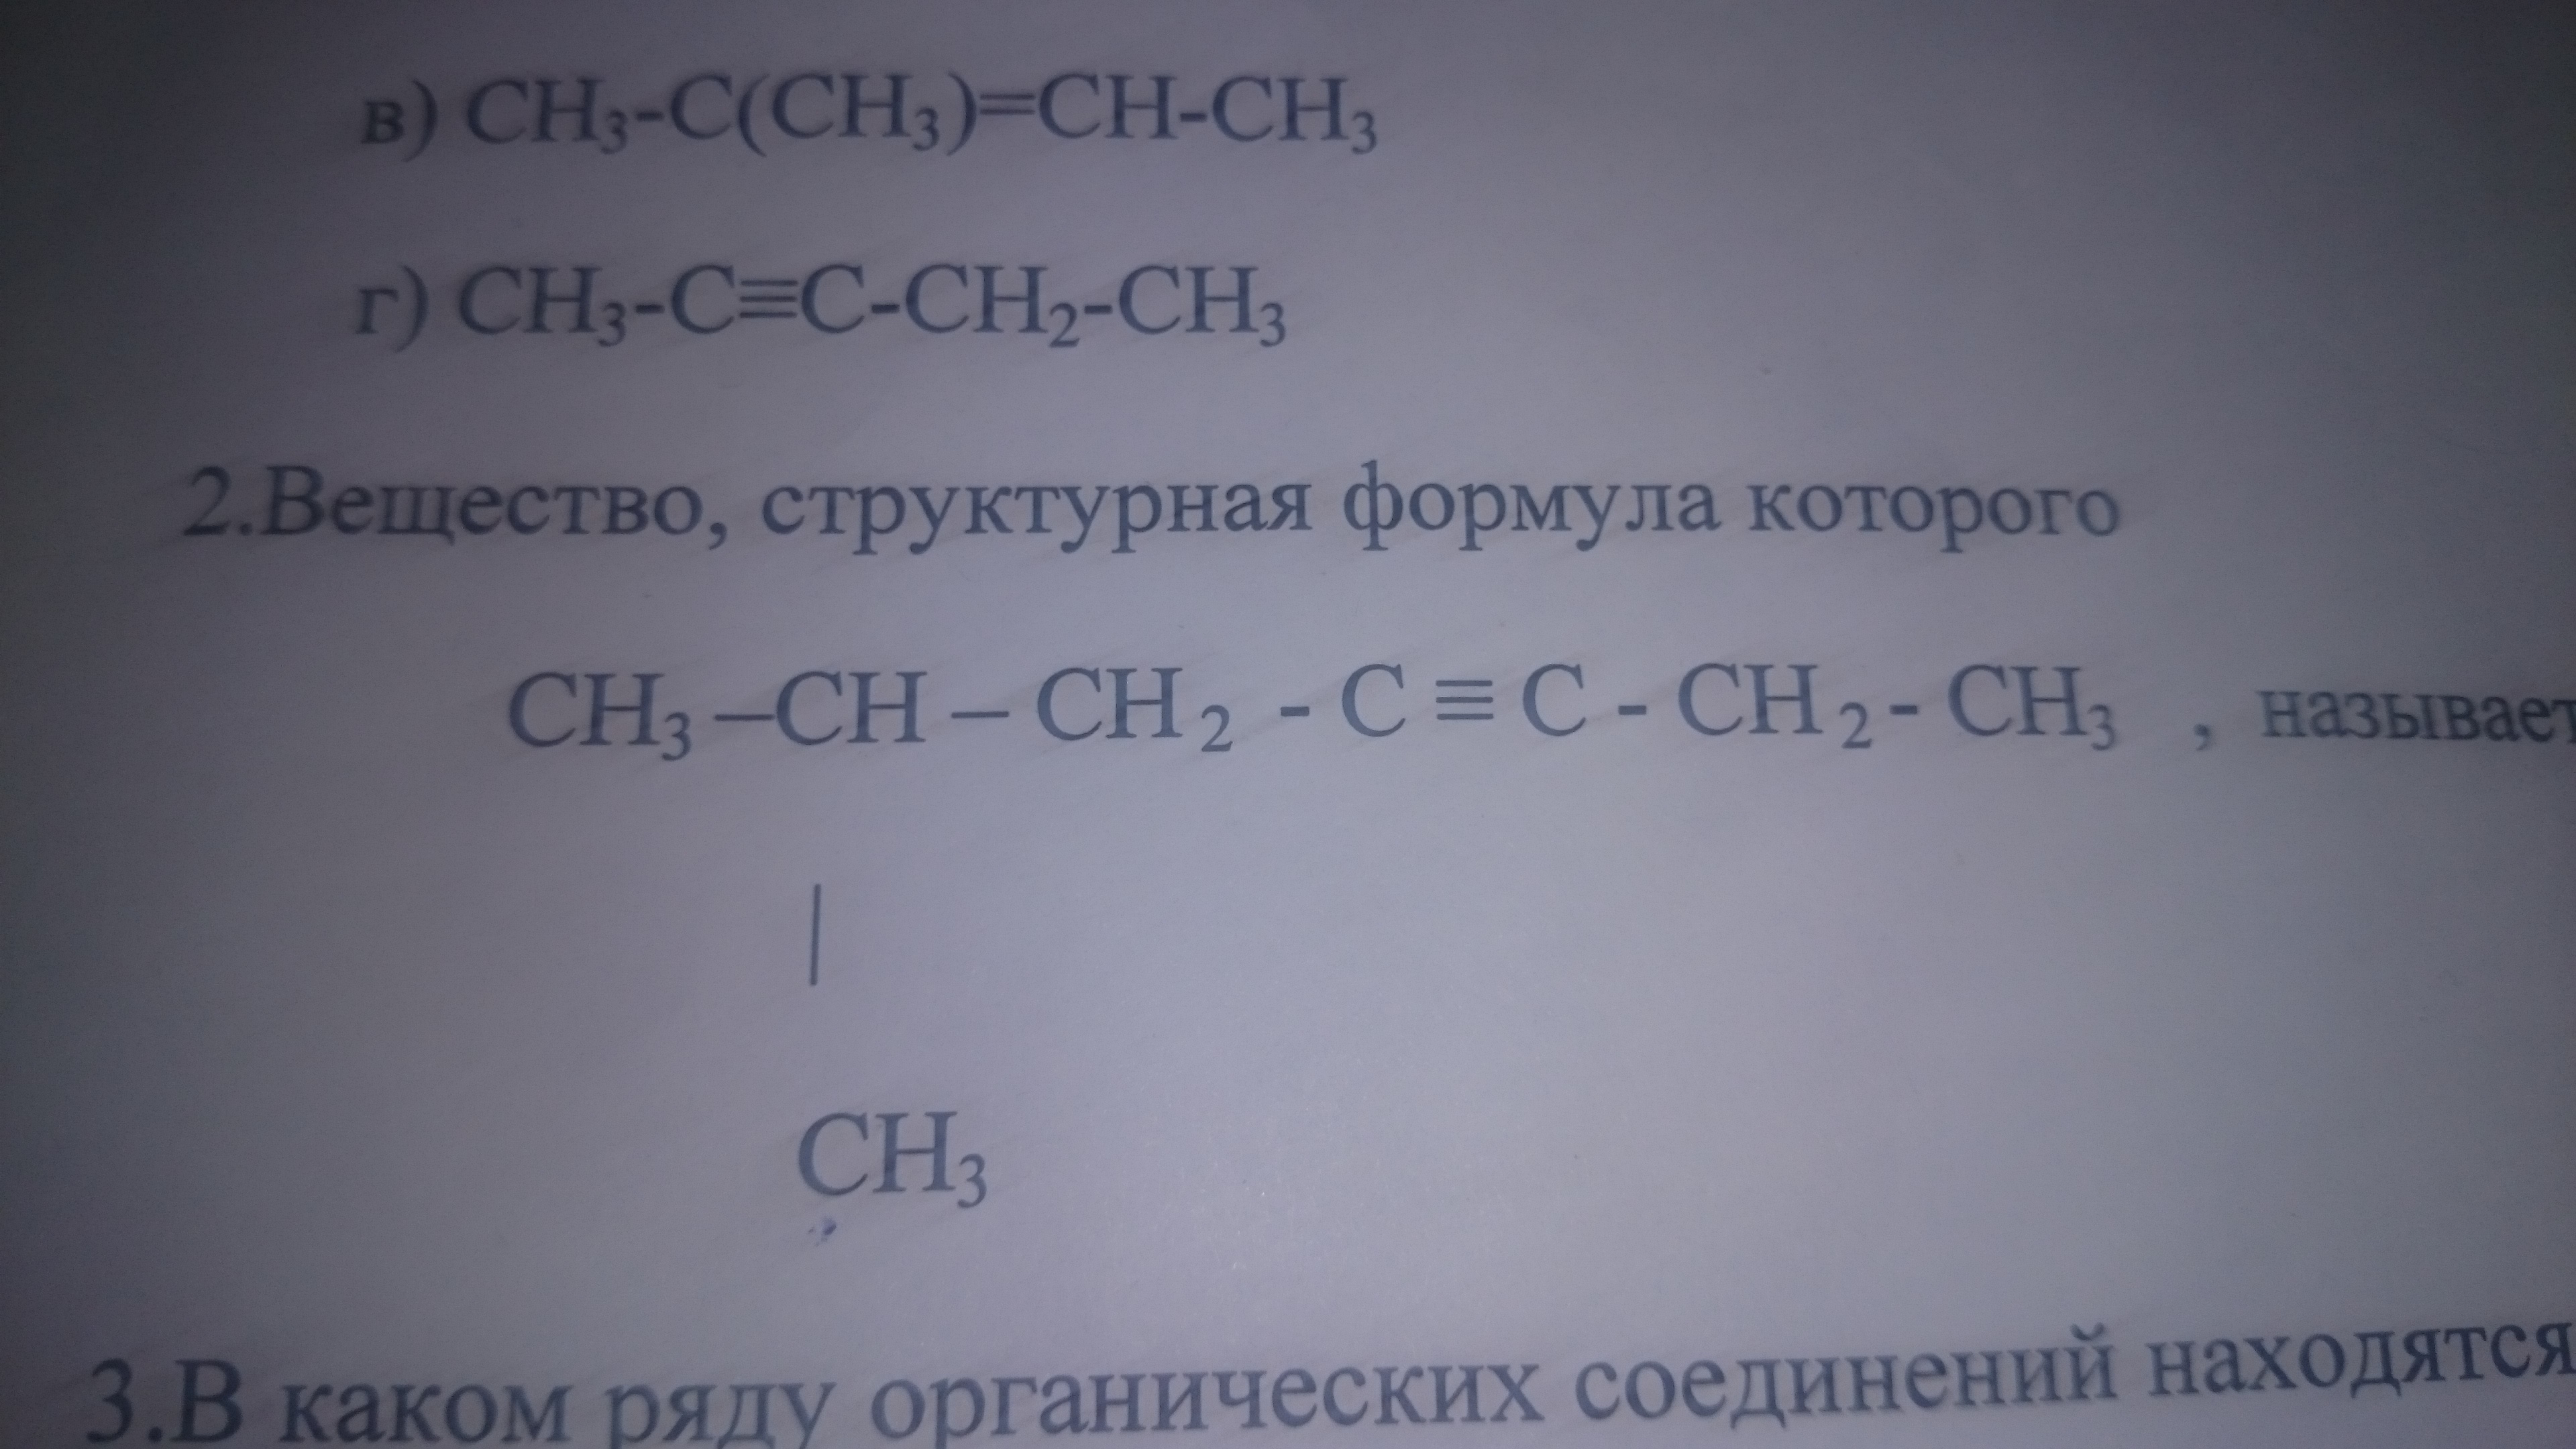 Назовите вещества caco3. Caf2 название вещества. Cac2 название вещества. C2h4 название вещества. Как называется вещество с7н15.